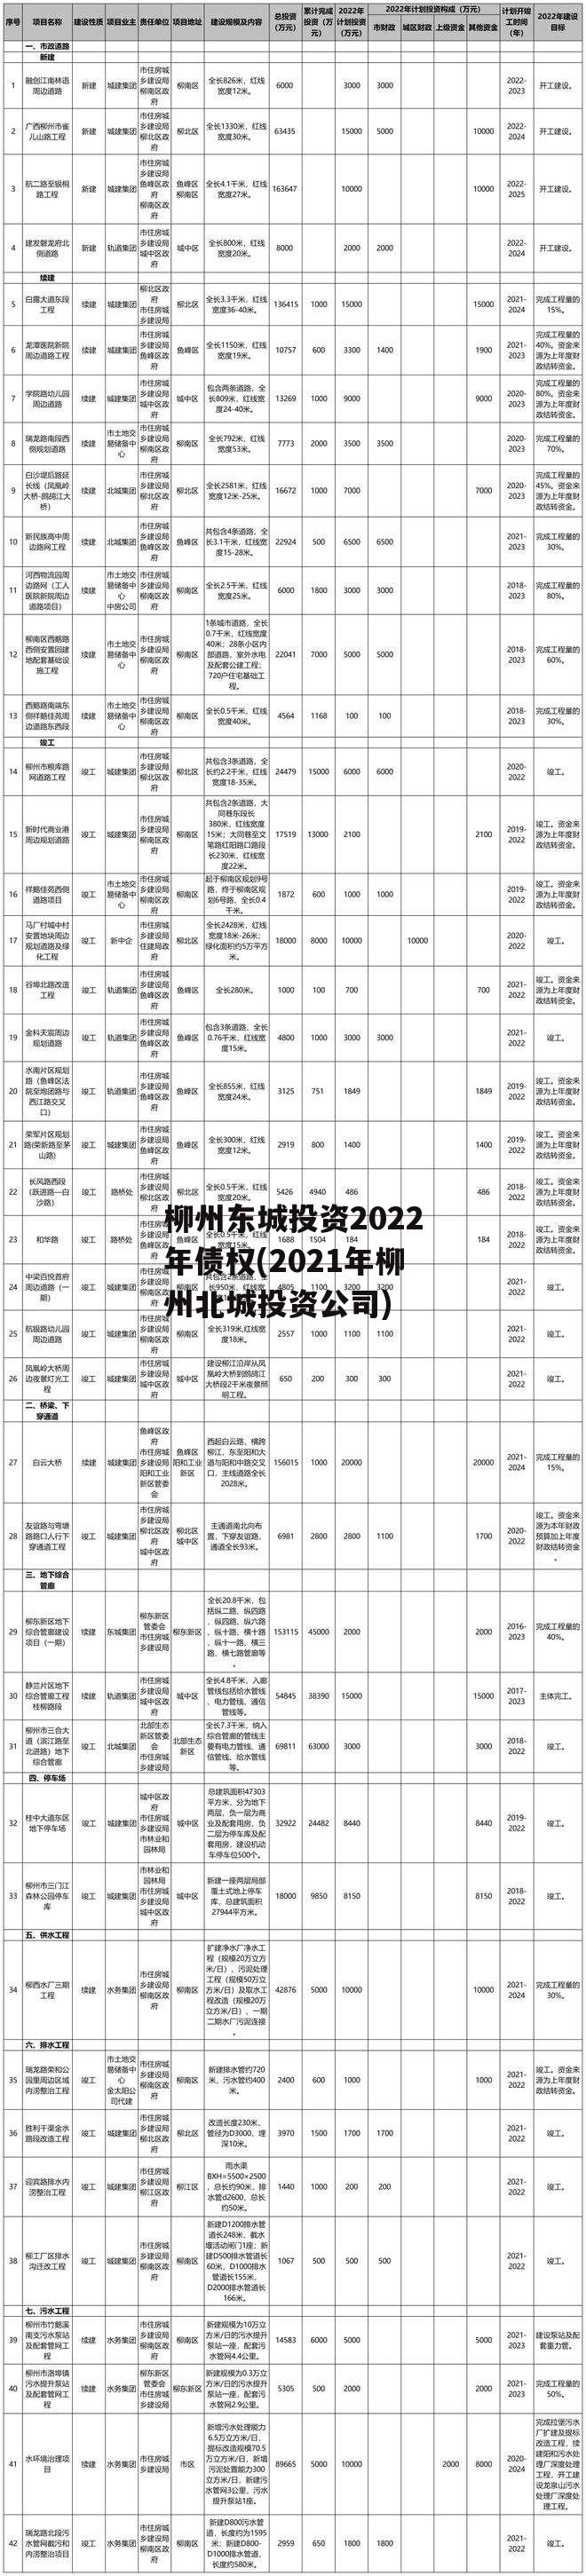 柳州东城投资2022年债权(2021年柳州北城投资公司)